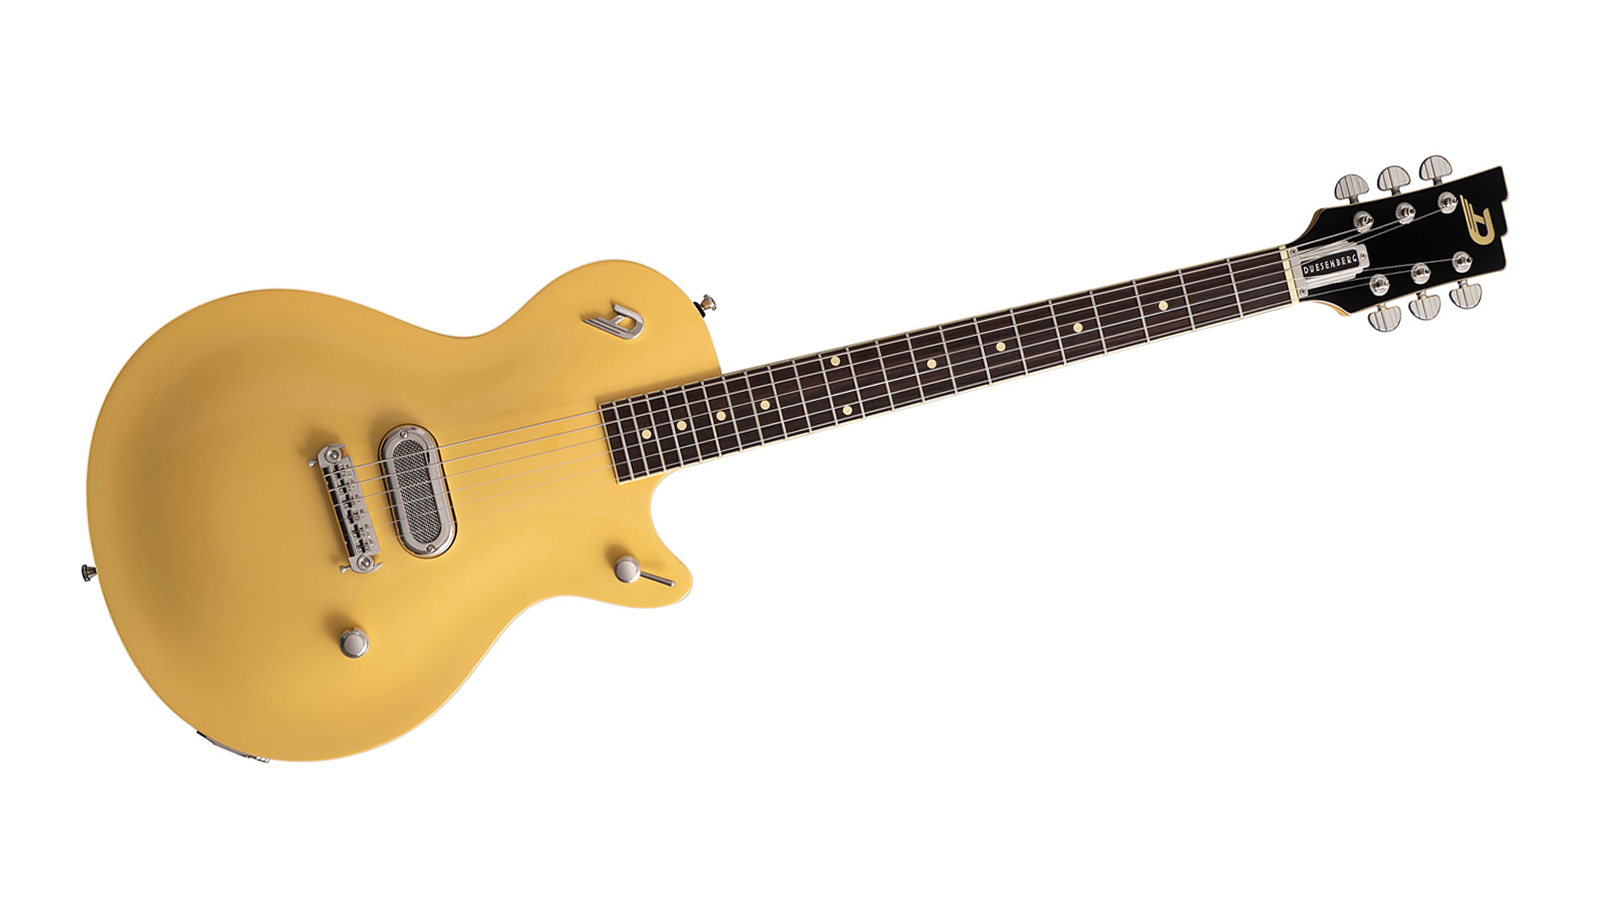 5 lighter alternatives to the Gibson Les Paul: Duesenberg The Senior